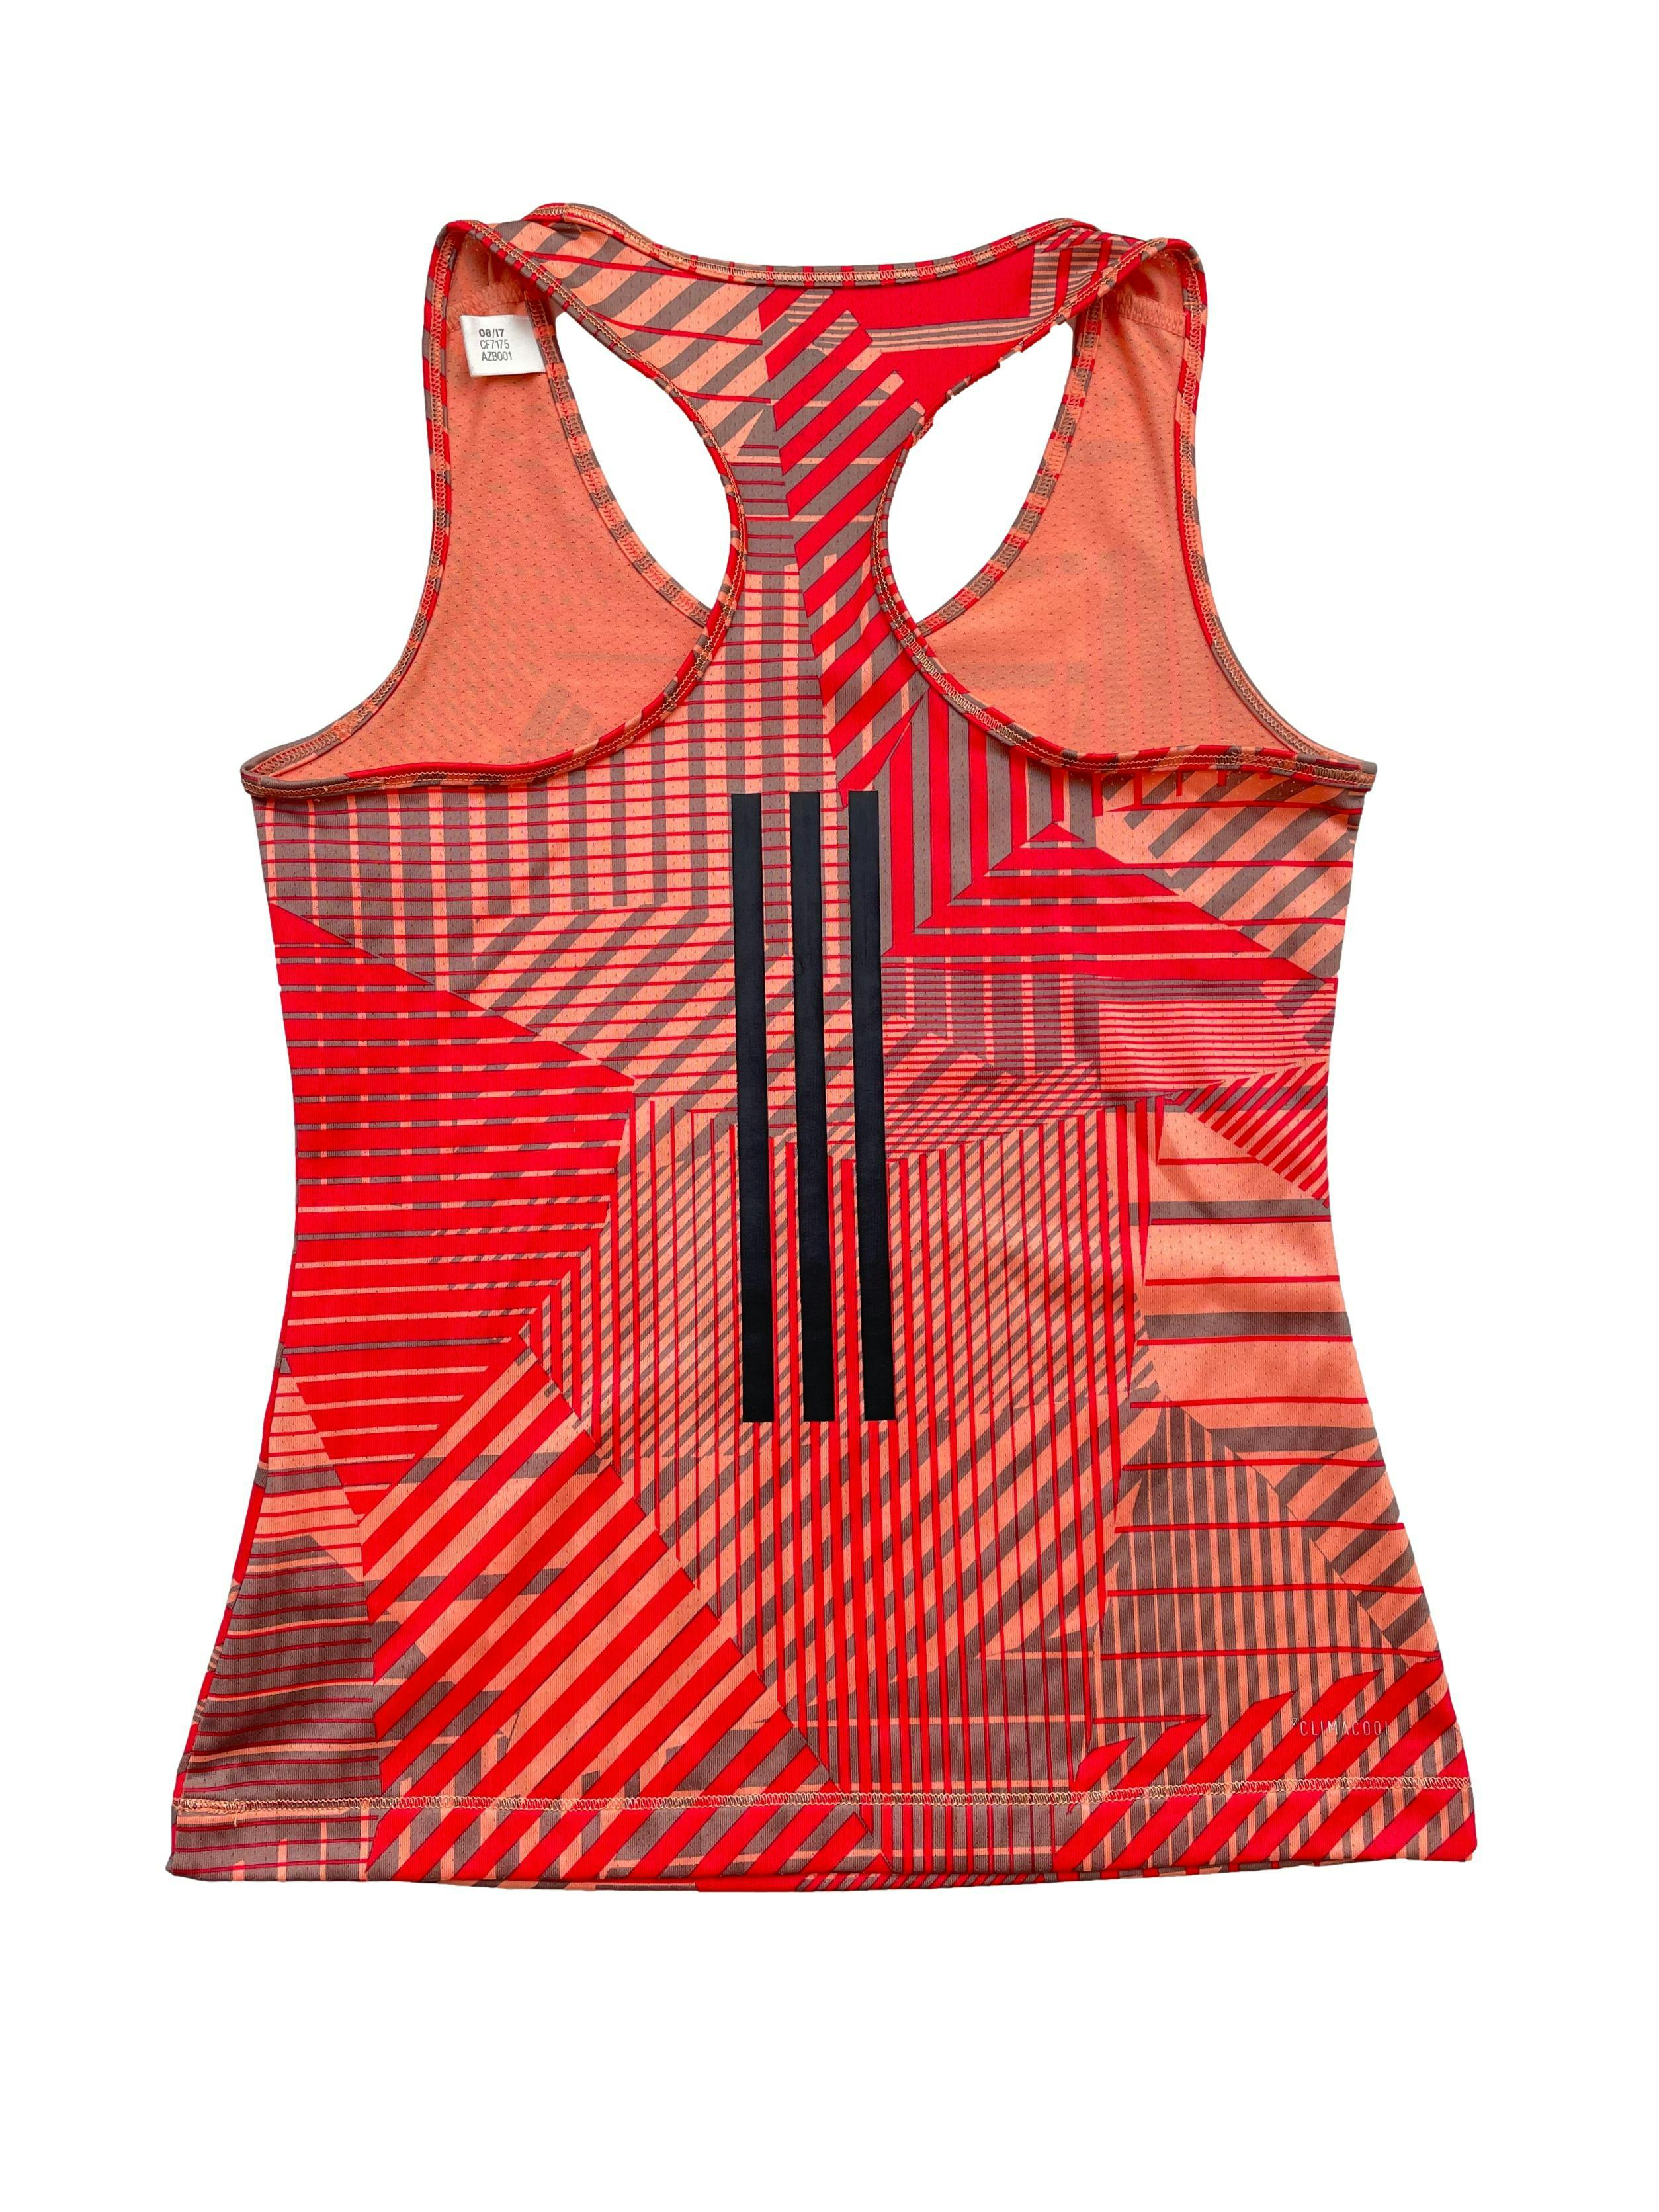 Bvd Adidas sport espalda olímpica, en tonos rojo, anaranjado y plomo. Pecho 70cm Largo 50cm